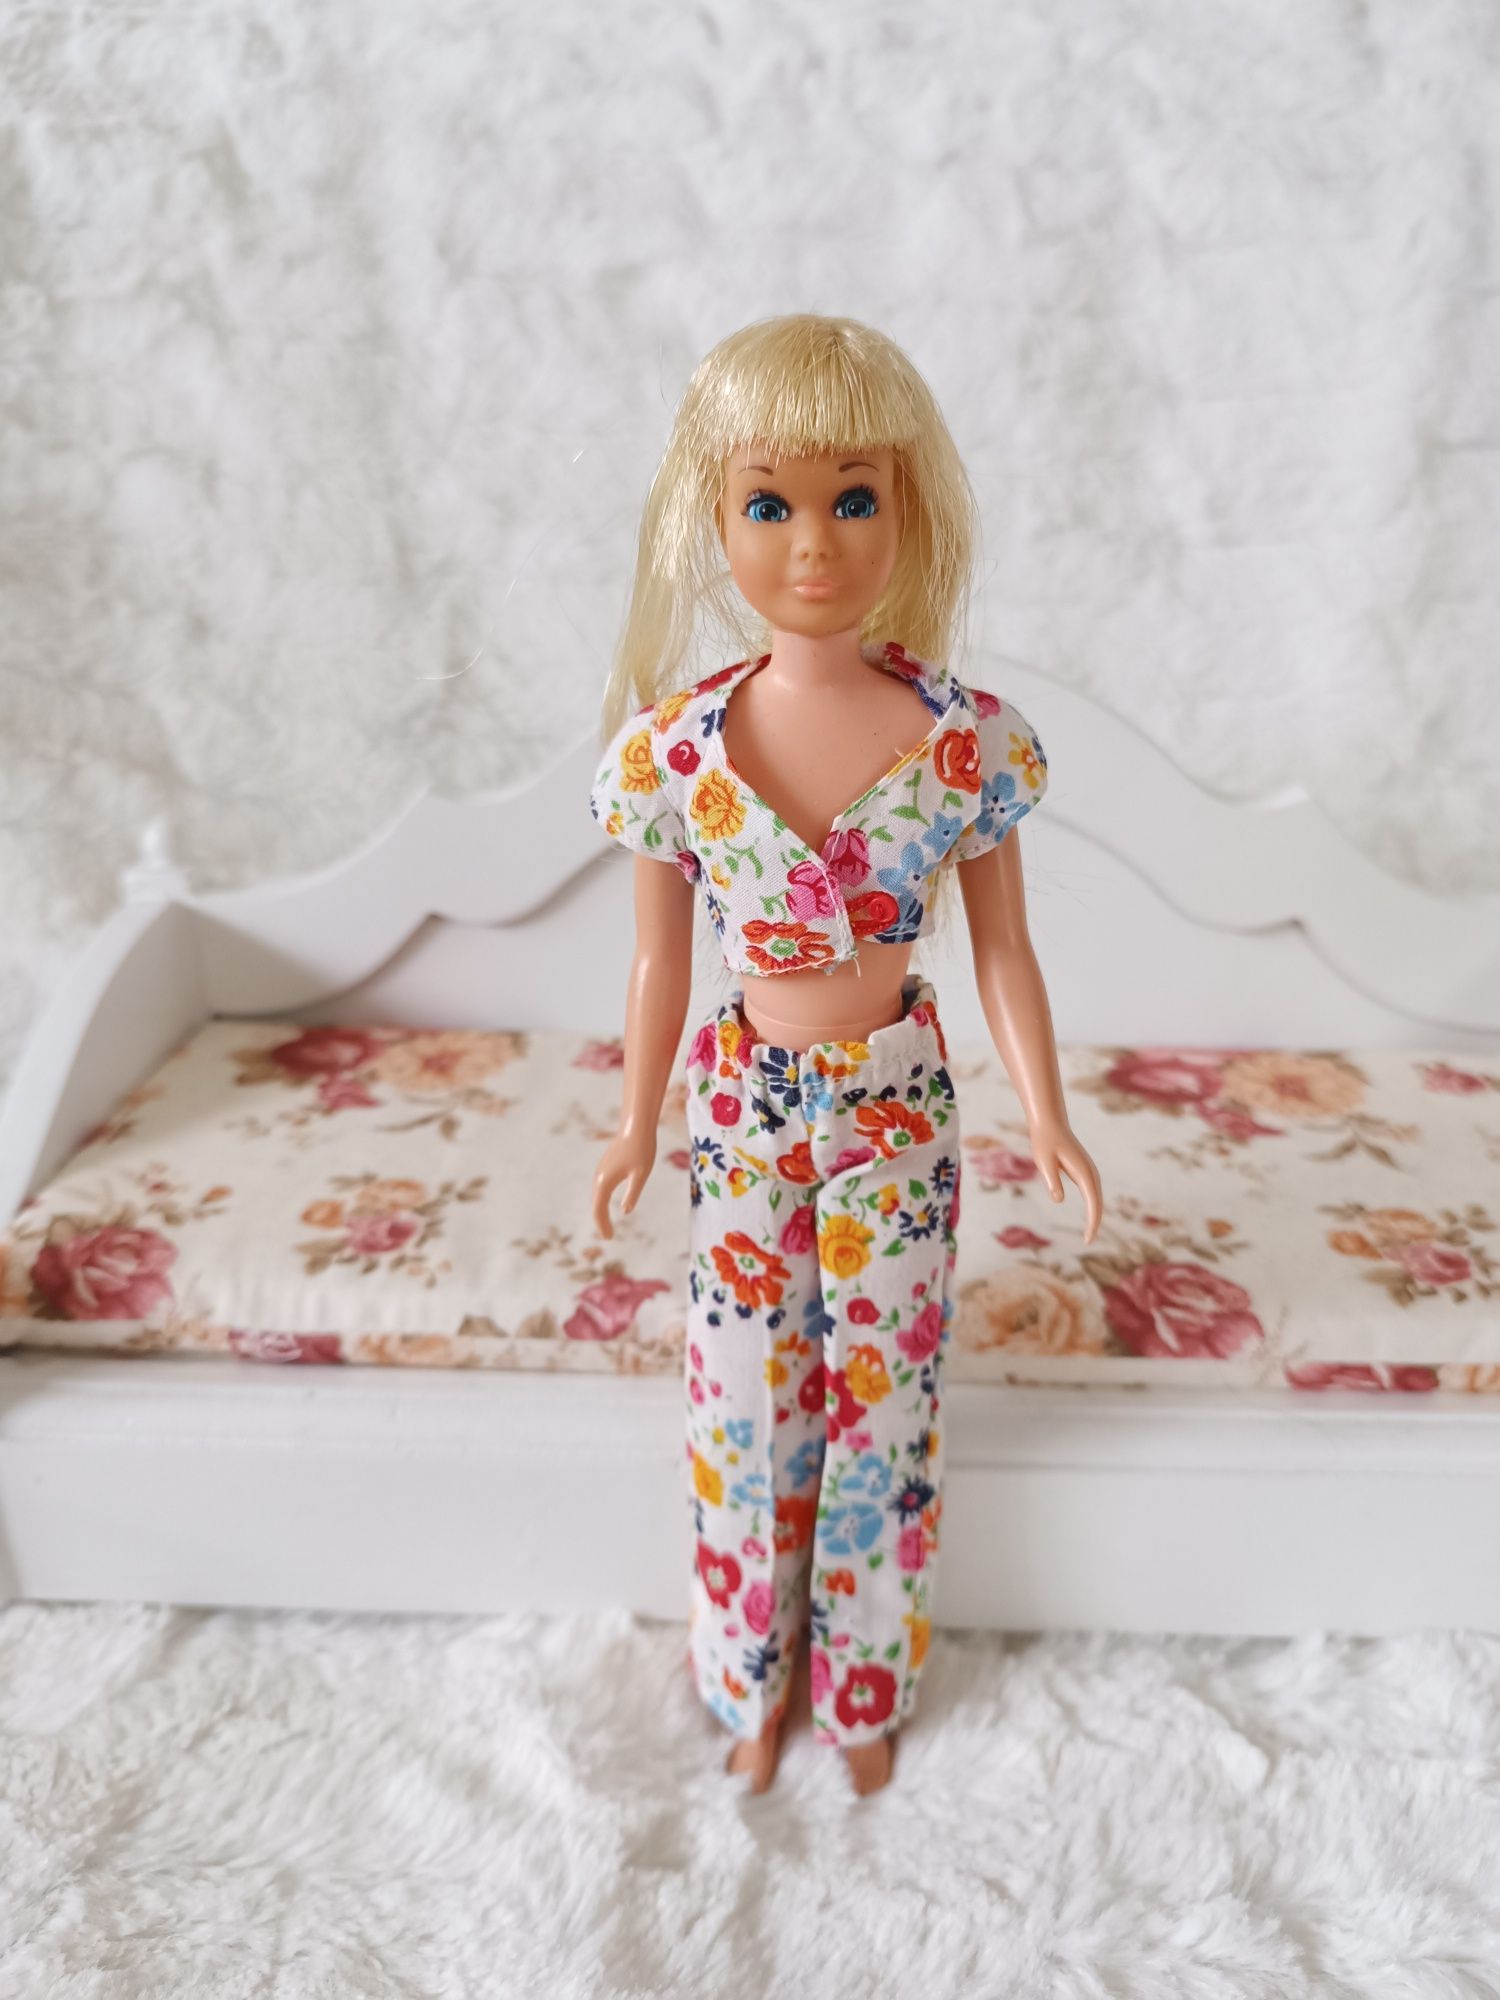 Lalka Barbie Skipper Malibu 1967 vintage Doll Mattel